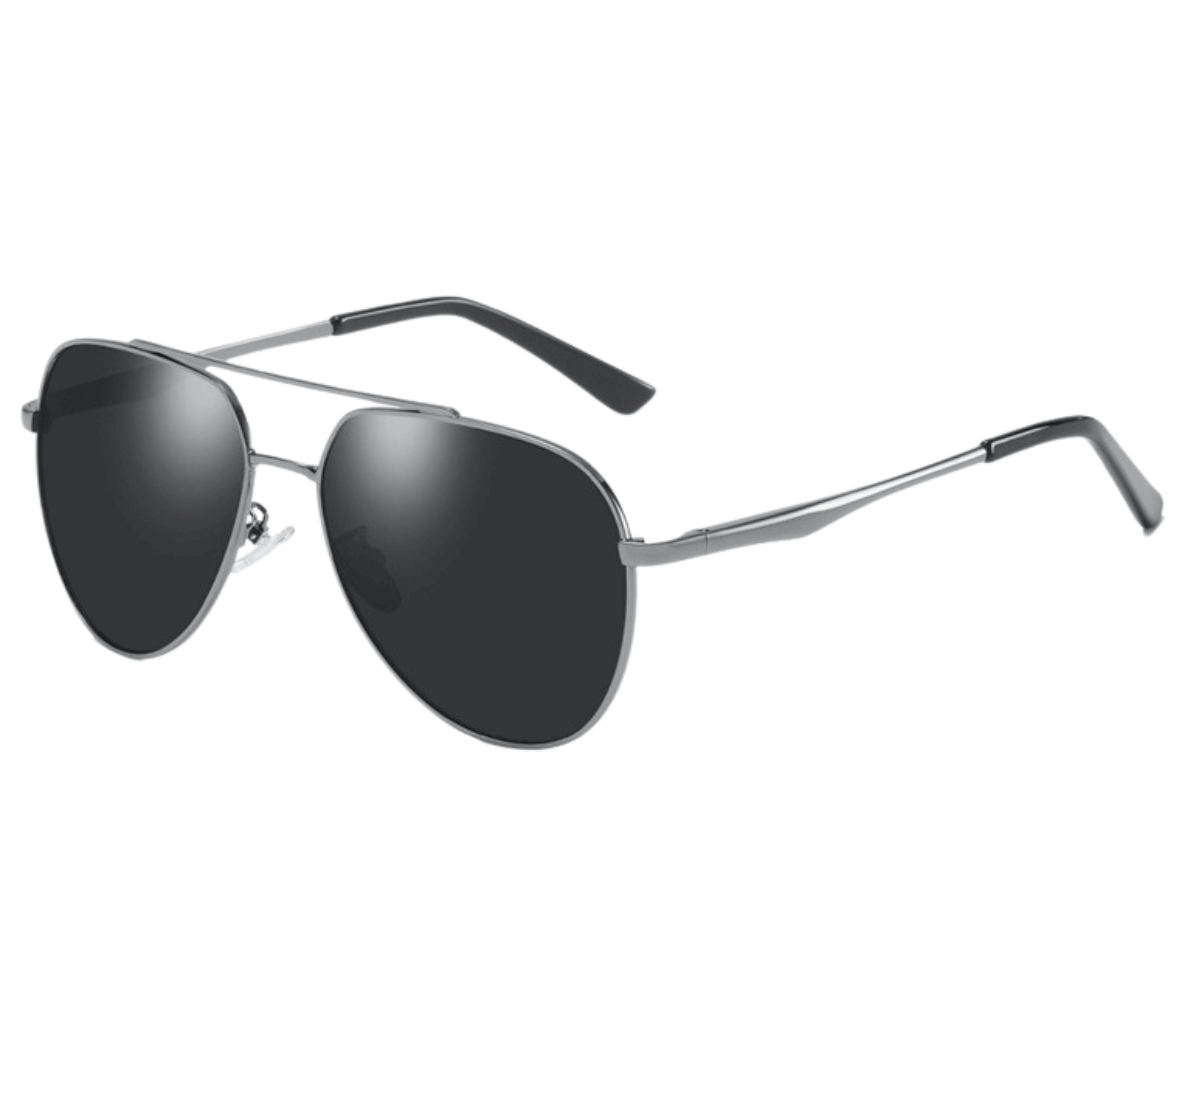 aviator black sunglasses, aviator sunglasses black, black aviator sunglasses, black gradient aviator sunglasses, sunglasses factory in China